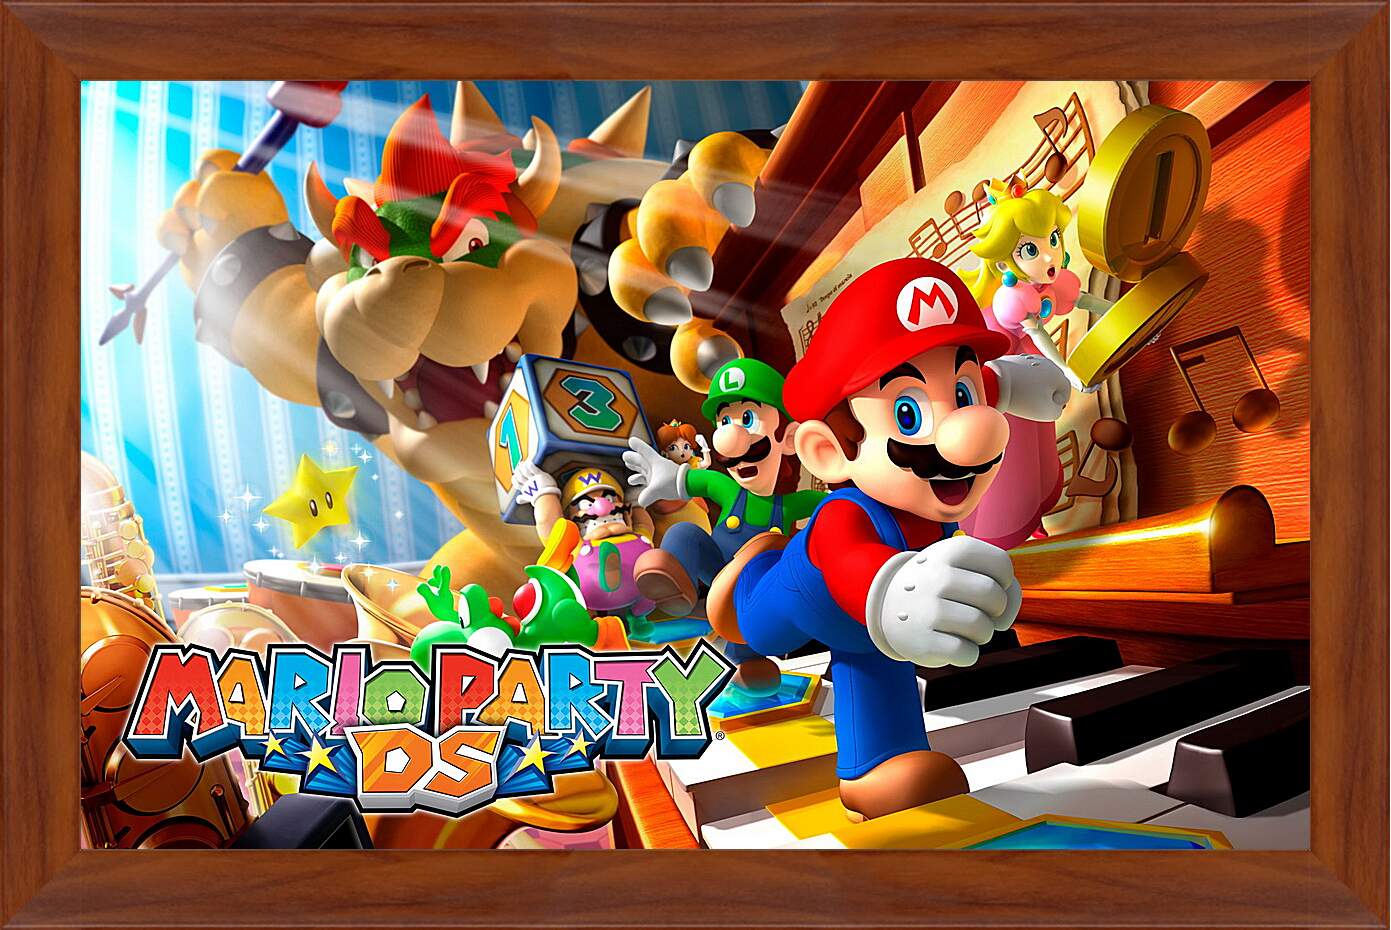 Картина в раме - Mario Party Ds
